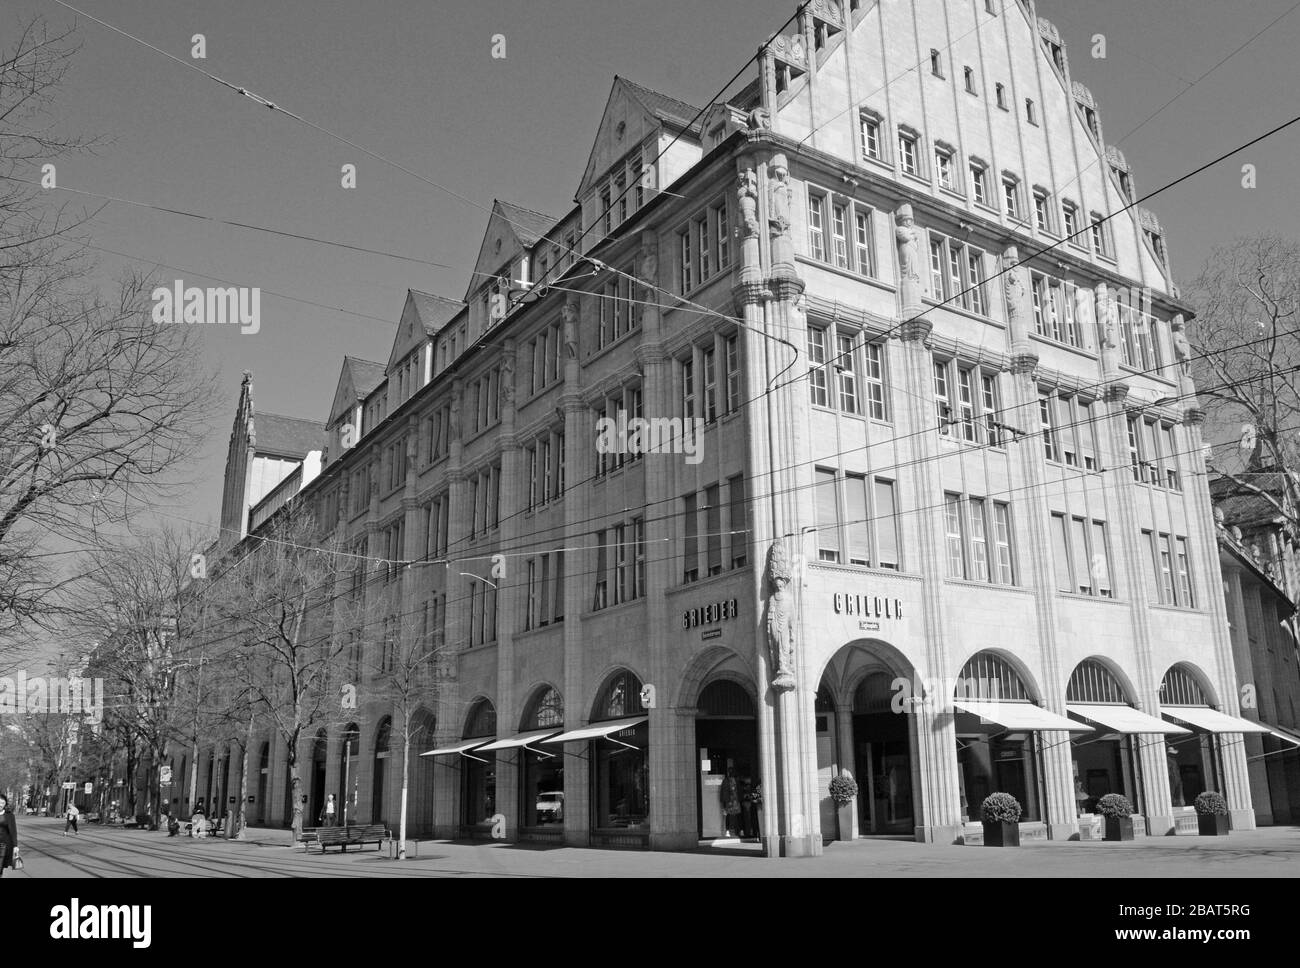 Zürichs Bahnhofstraße in Zeiten des Corona-Virus mit geschlossenen Geschäften, Bars, Restaurants und Kinos wie überall in der Schweiz Stockfoto